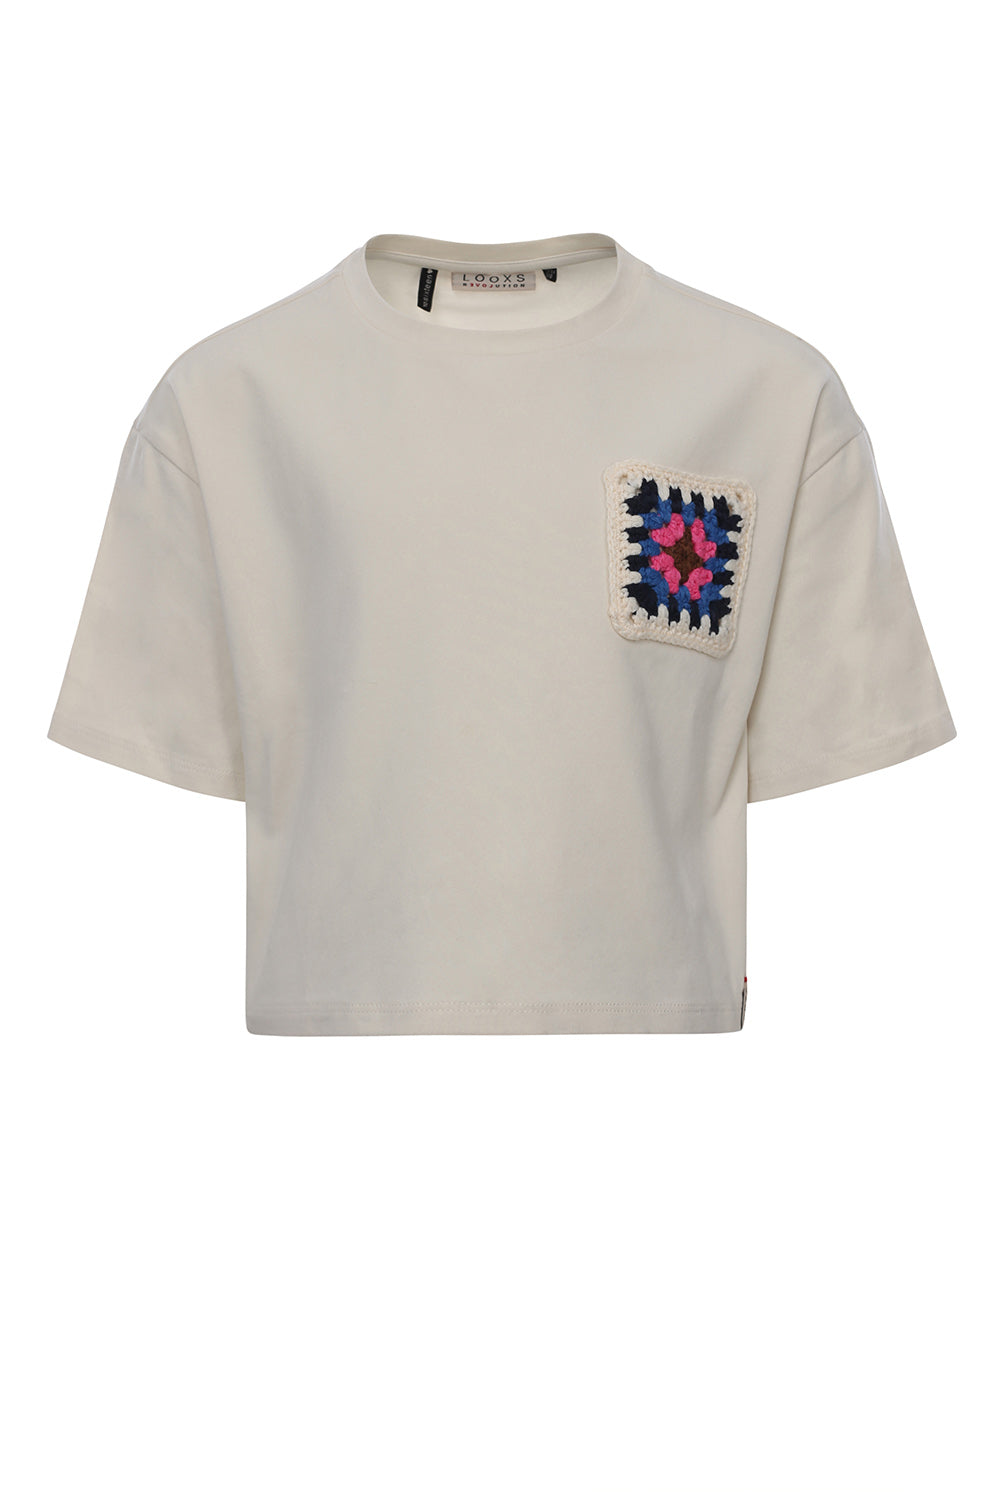 Meisjes Oversized Crop T-Shirt van LOOXS 10sixteen in de kleur Dove white in maat 176.